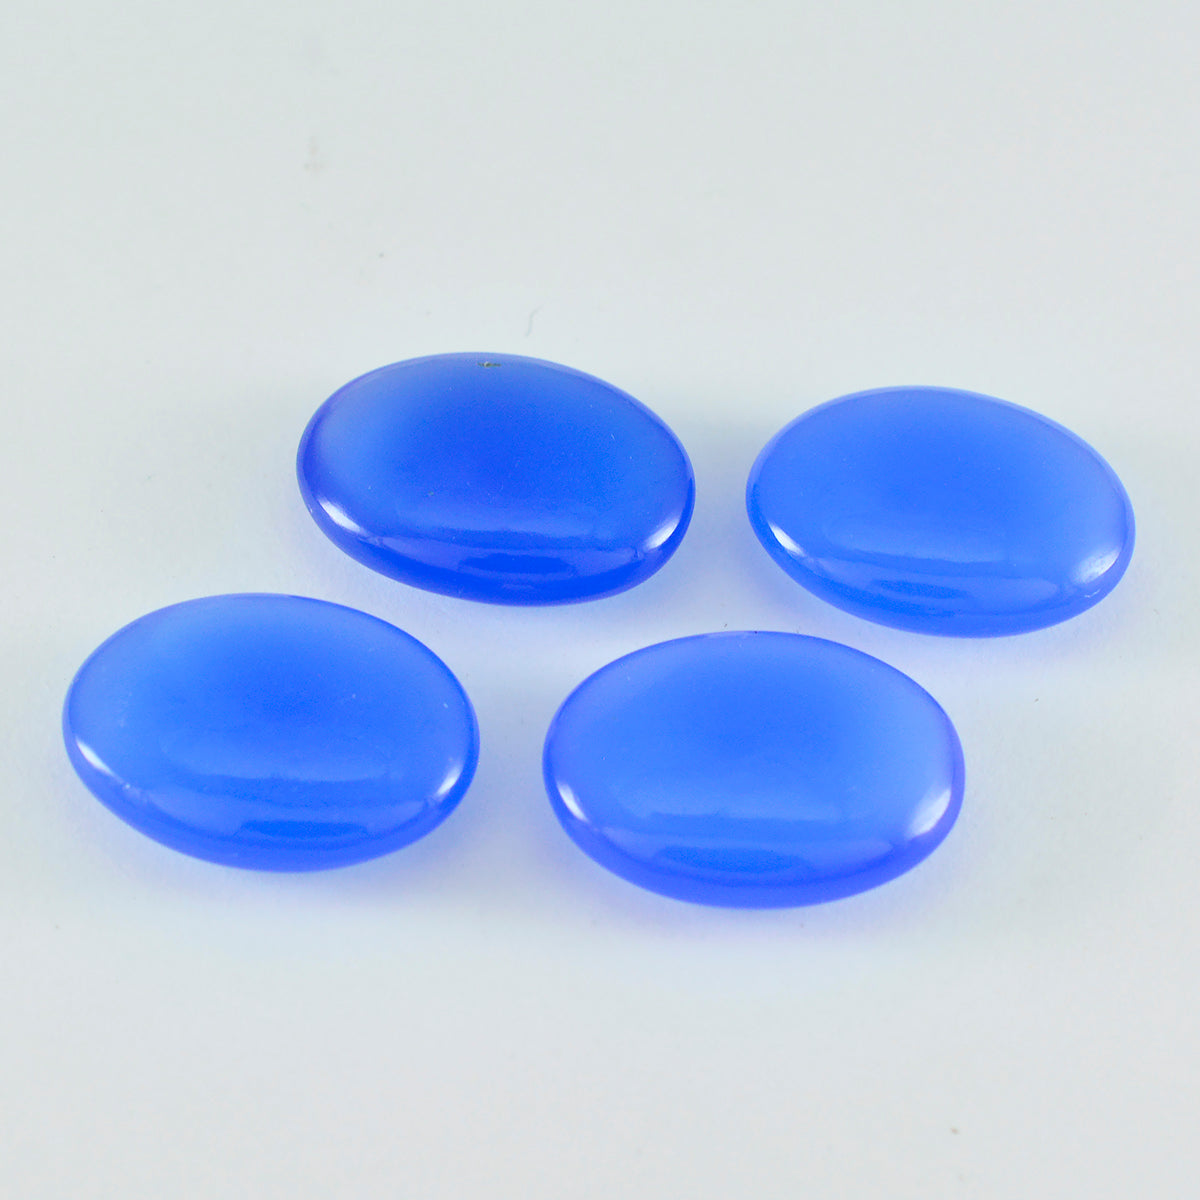 Riyogems 1 cabujón de calcedonia azul, 4 x 6 mm, forma de pera, una piedra preciosa de calidad